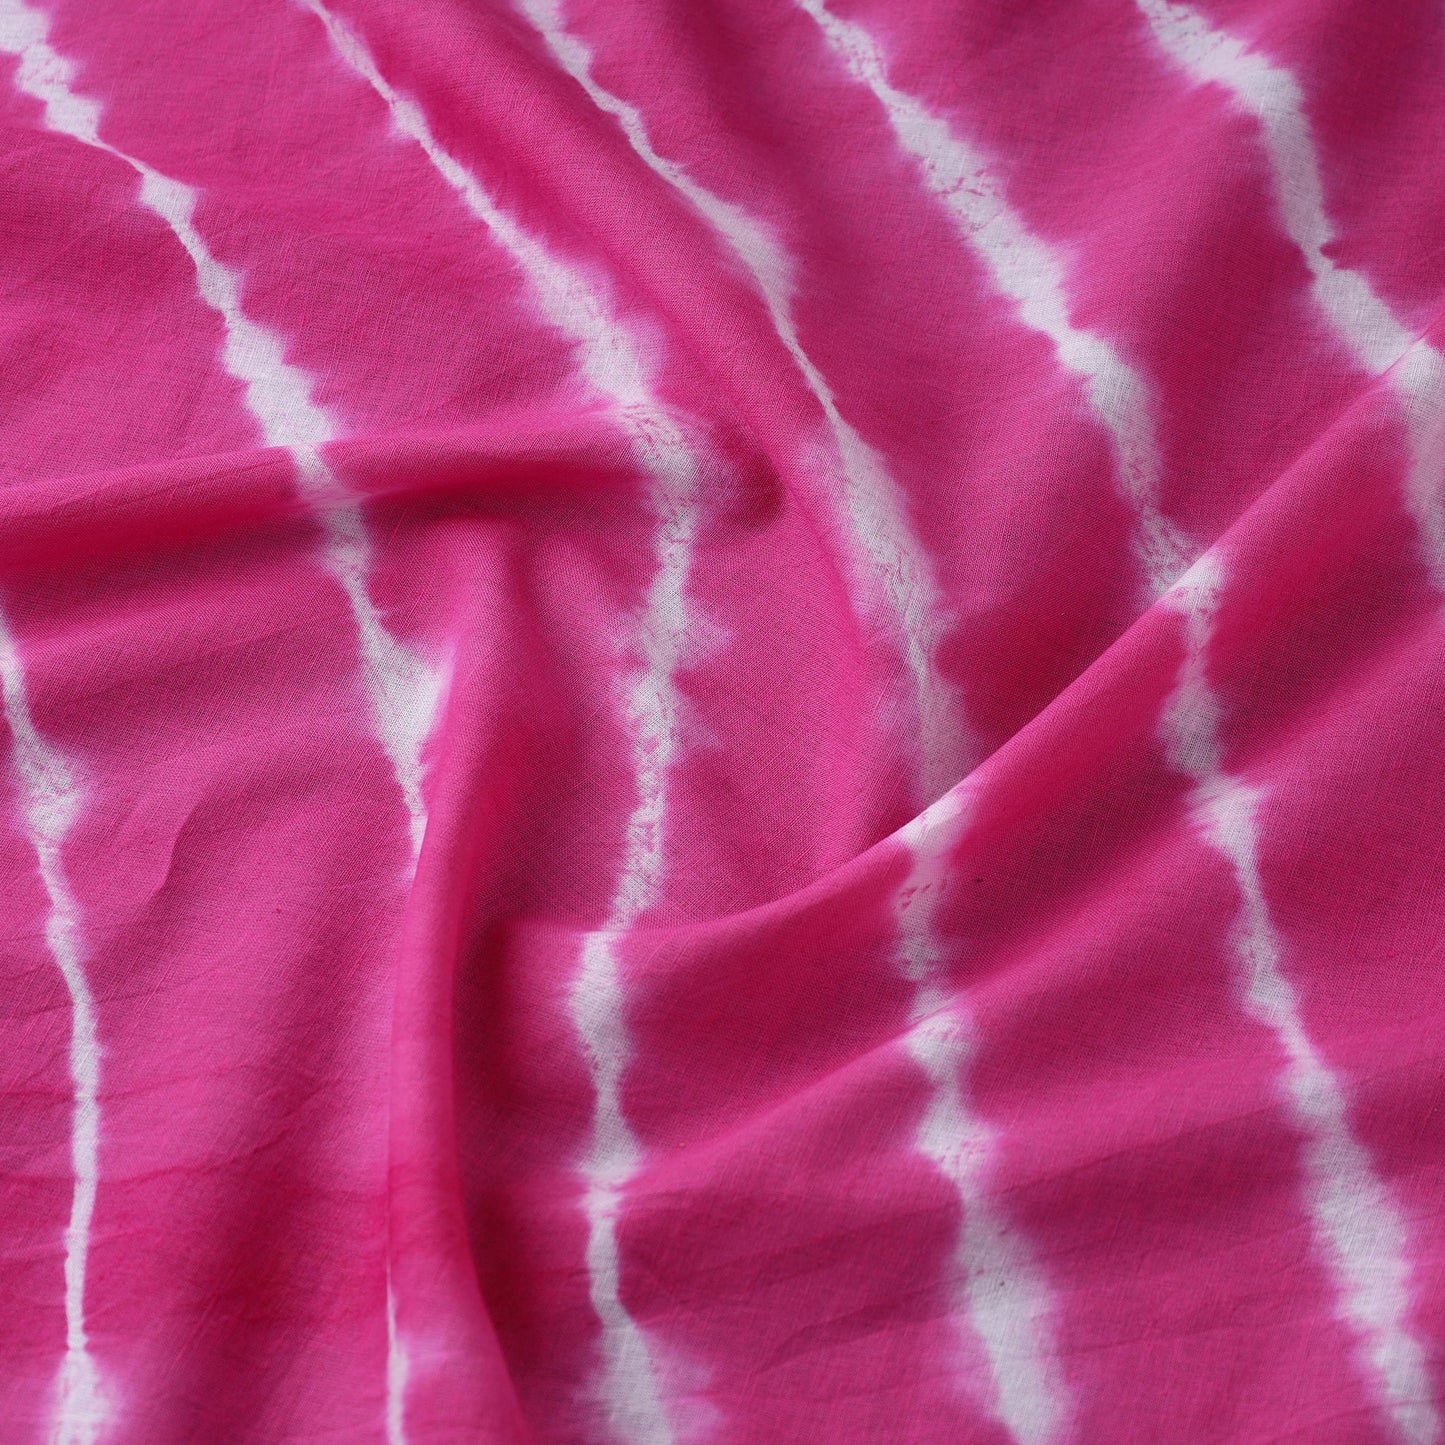 Pink - Shibori Tie-Dye Cotton Fabric 04